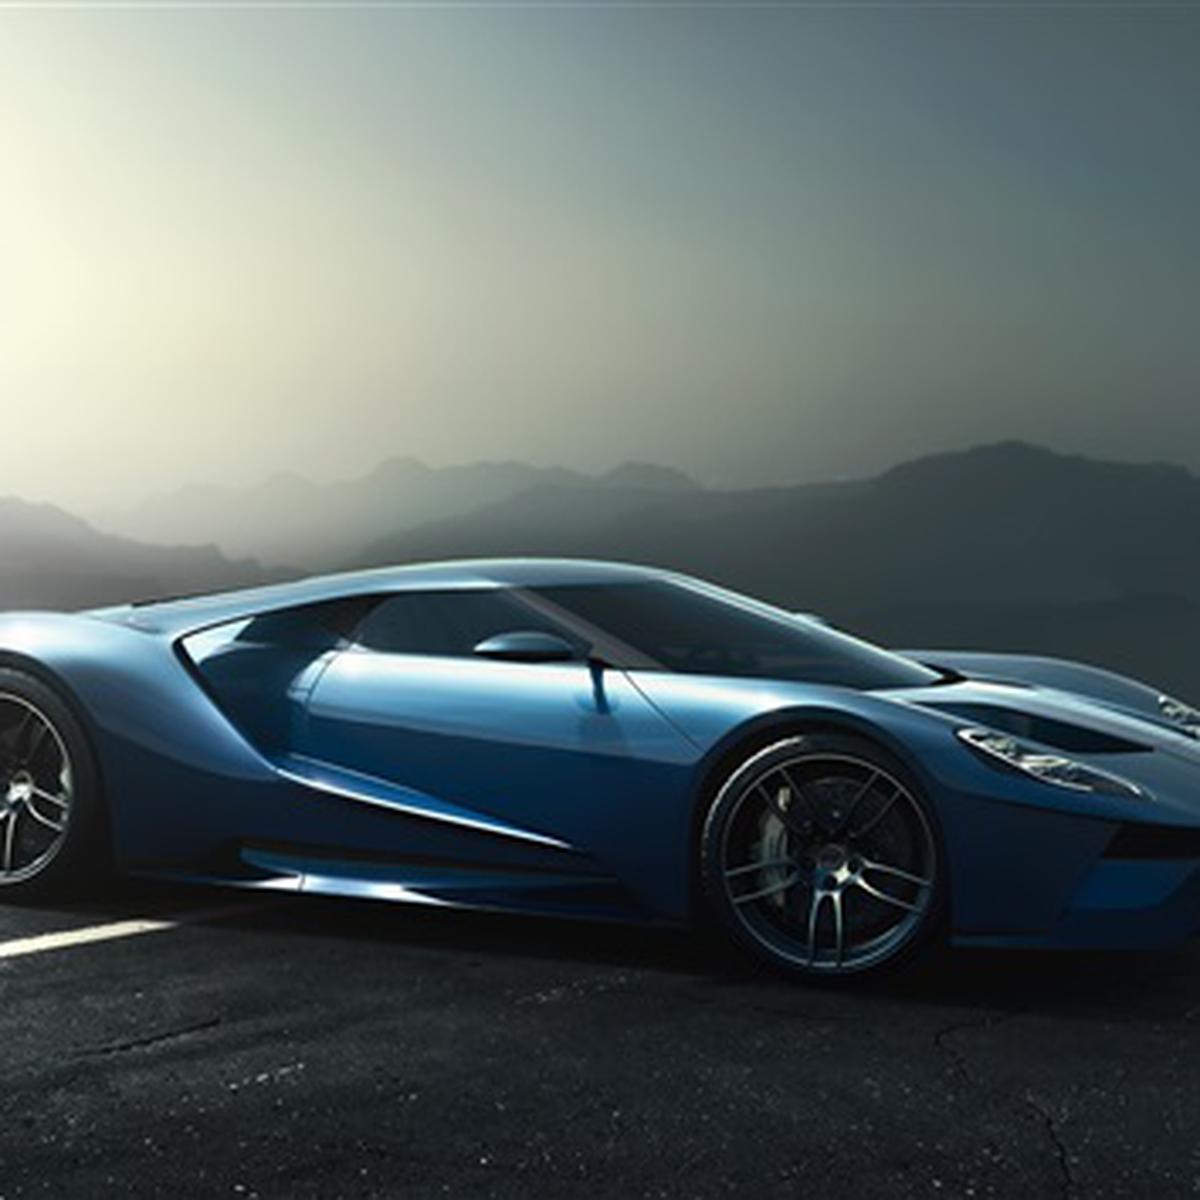 Los 10 coches más emblemáticos de la saga 'Fast & Furious' - eCartelera